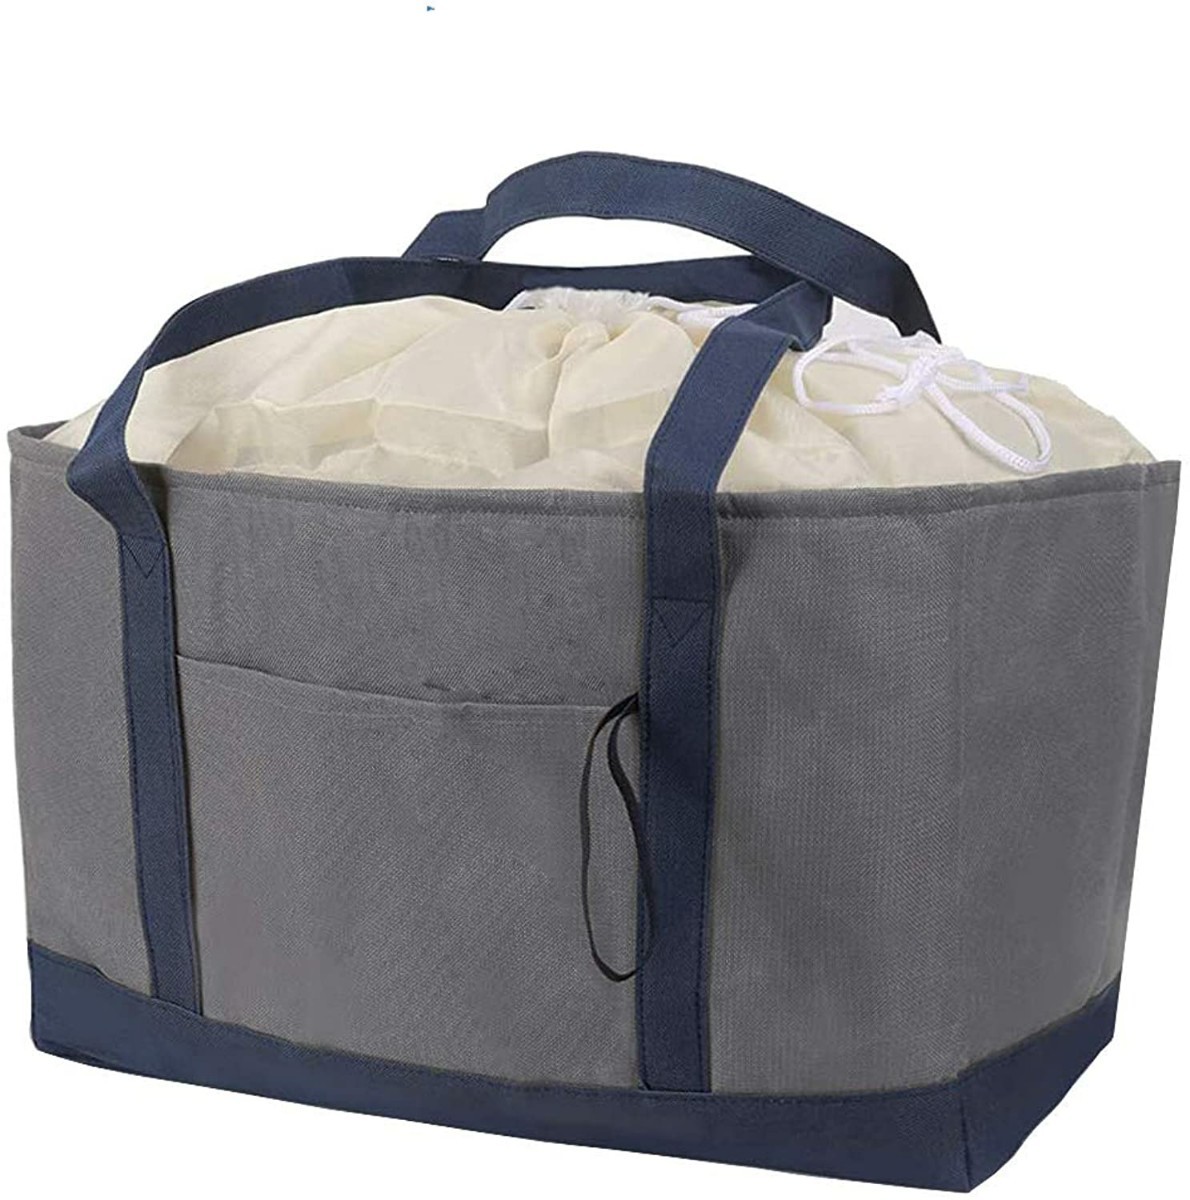 新品 エコバッグ 保温保冷バッグ お弁当箱 買い物バッグ 巾着レジ袋 ショッピングバッグ コンパクトコンビニ袋 レジかごバッグ 紺